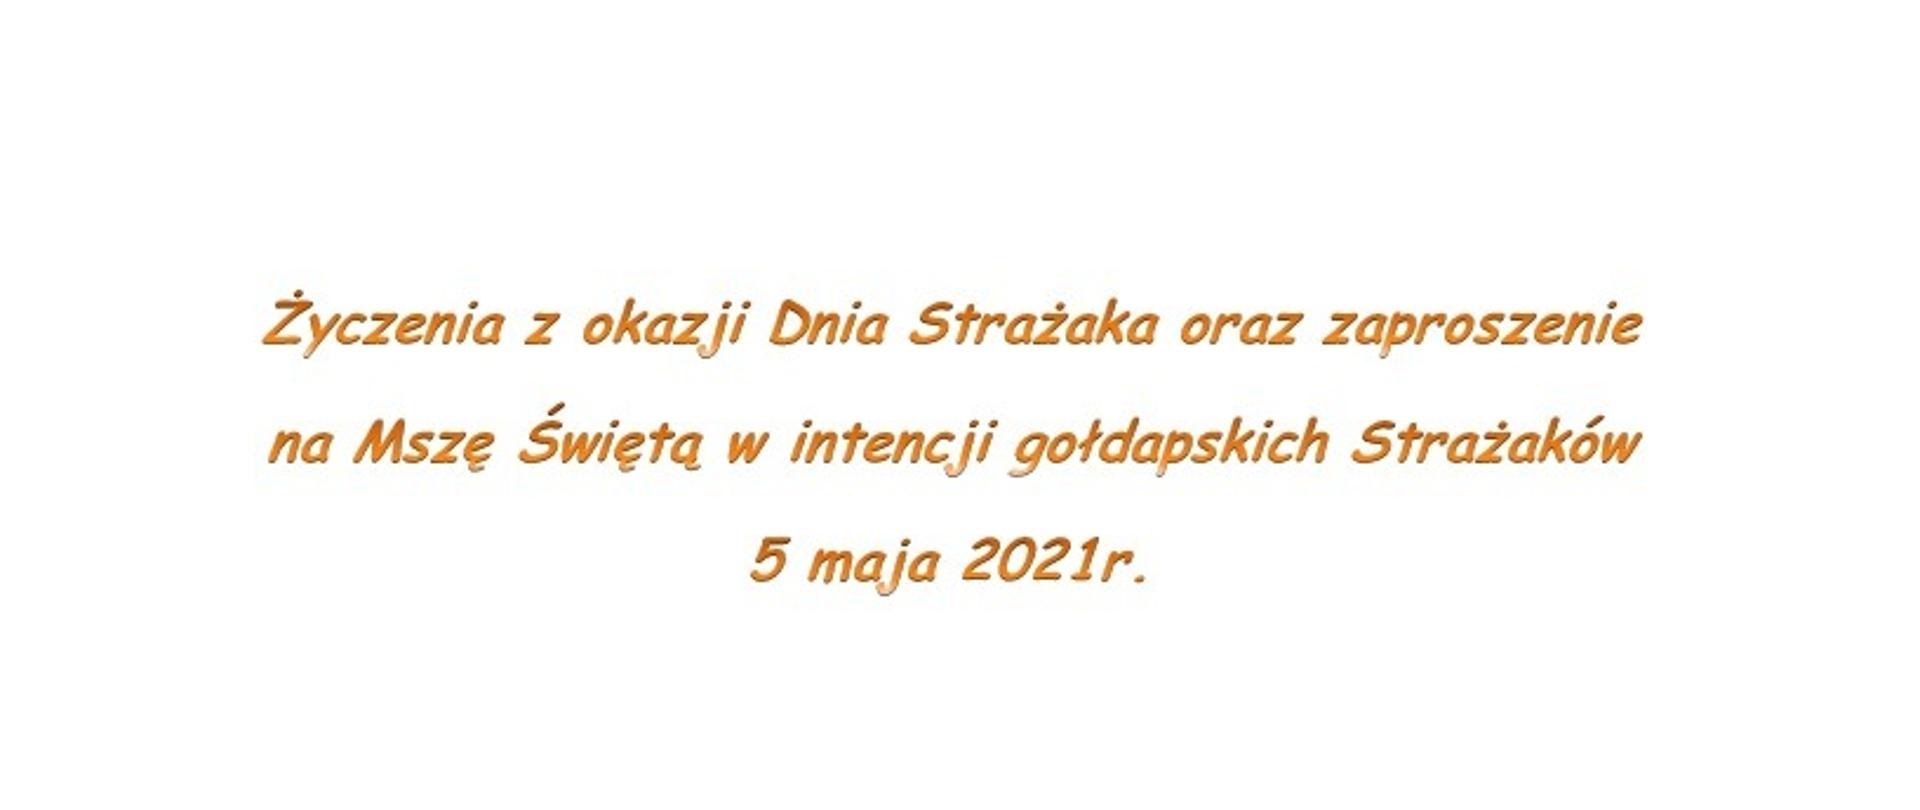 Życzenia z okazji Dnia Strażaka oraz zaproszenie na Mszę Świętą w intencji gołdapskich Strażaków 5 maja 2021r.